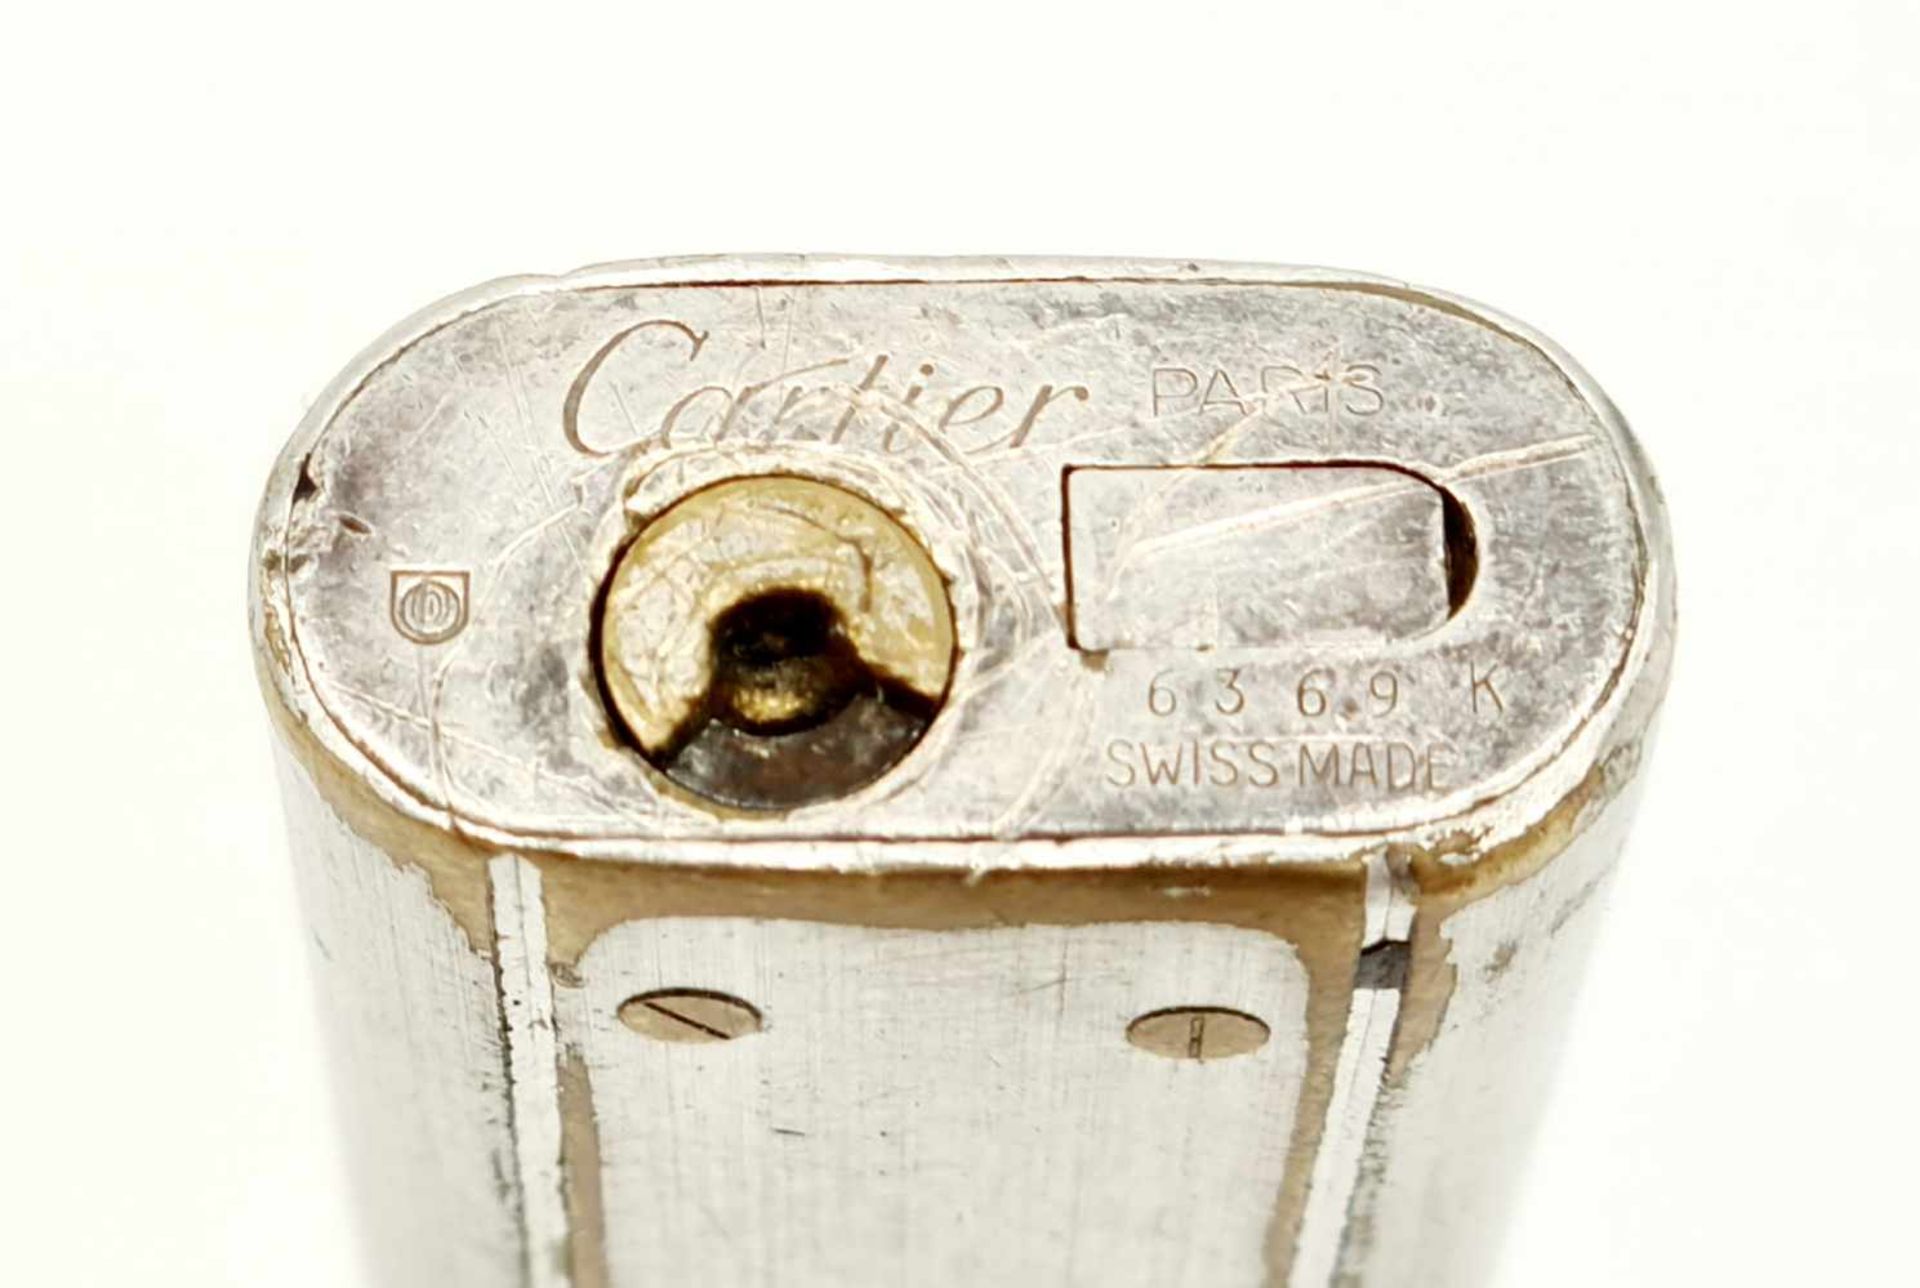 Cartier Paris , Feuerzeug , Re.: 6369 K ,Funktion nicht überprüft , Keine Gewähr auf Funktion - Image 3 of 3